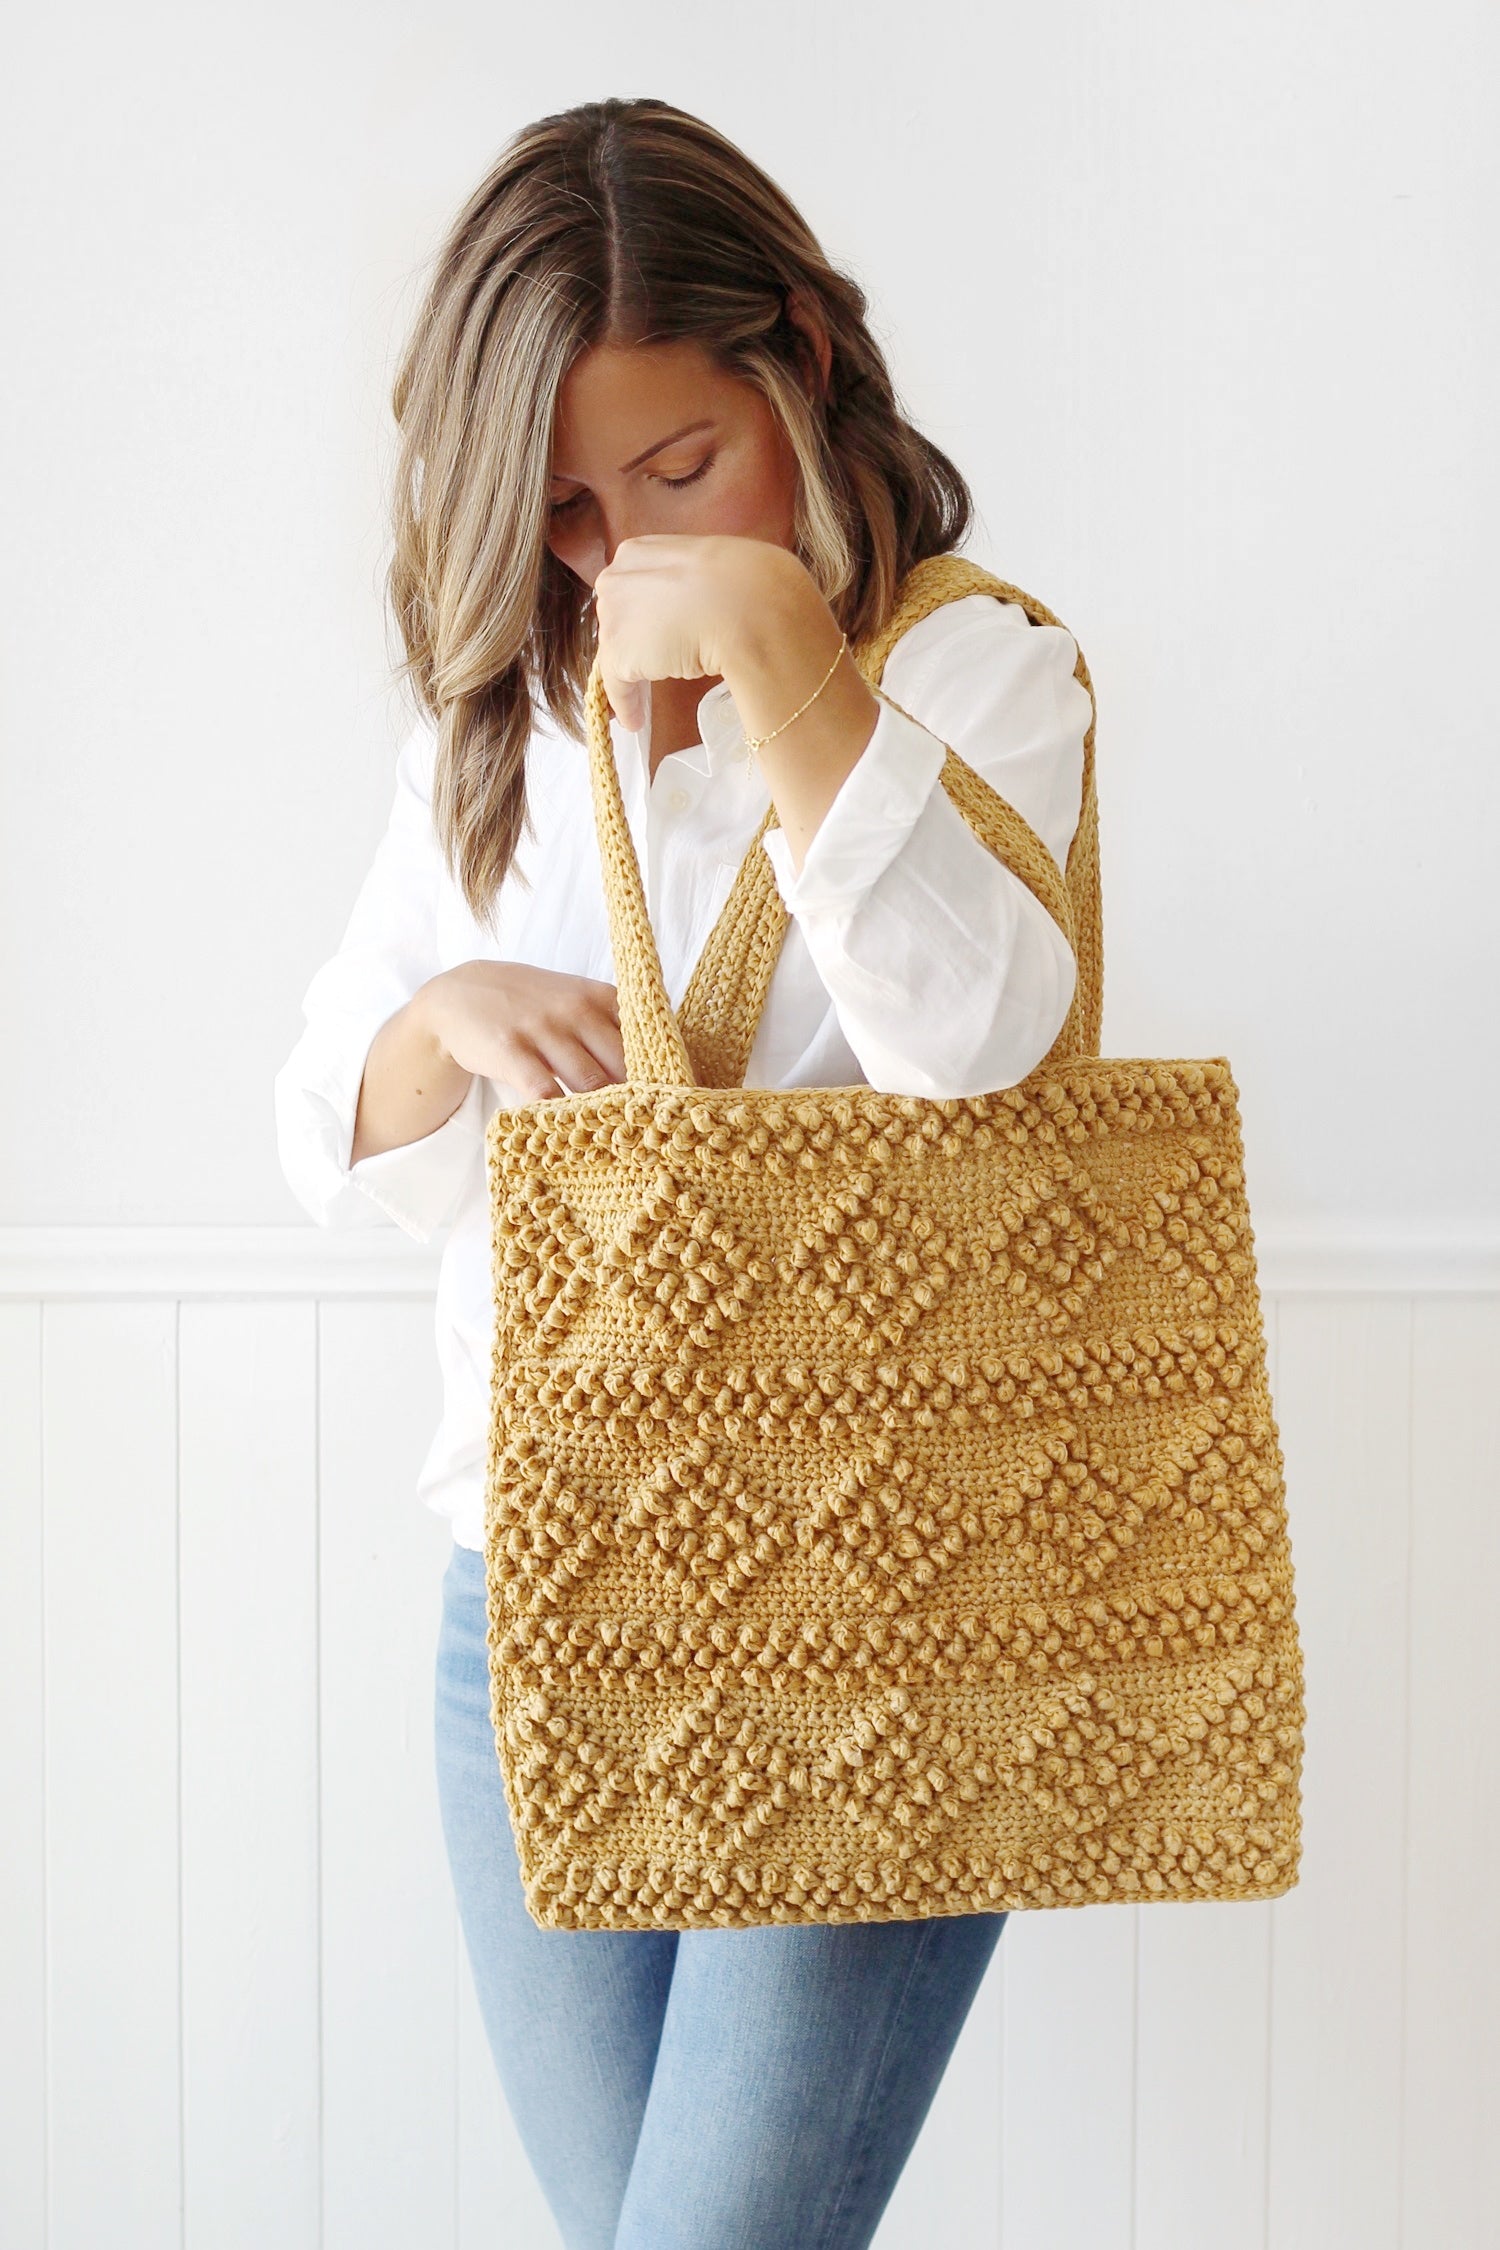 Image of Crochet Kit - Adilyn Bag / Pillow